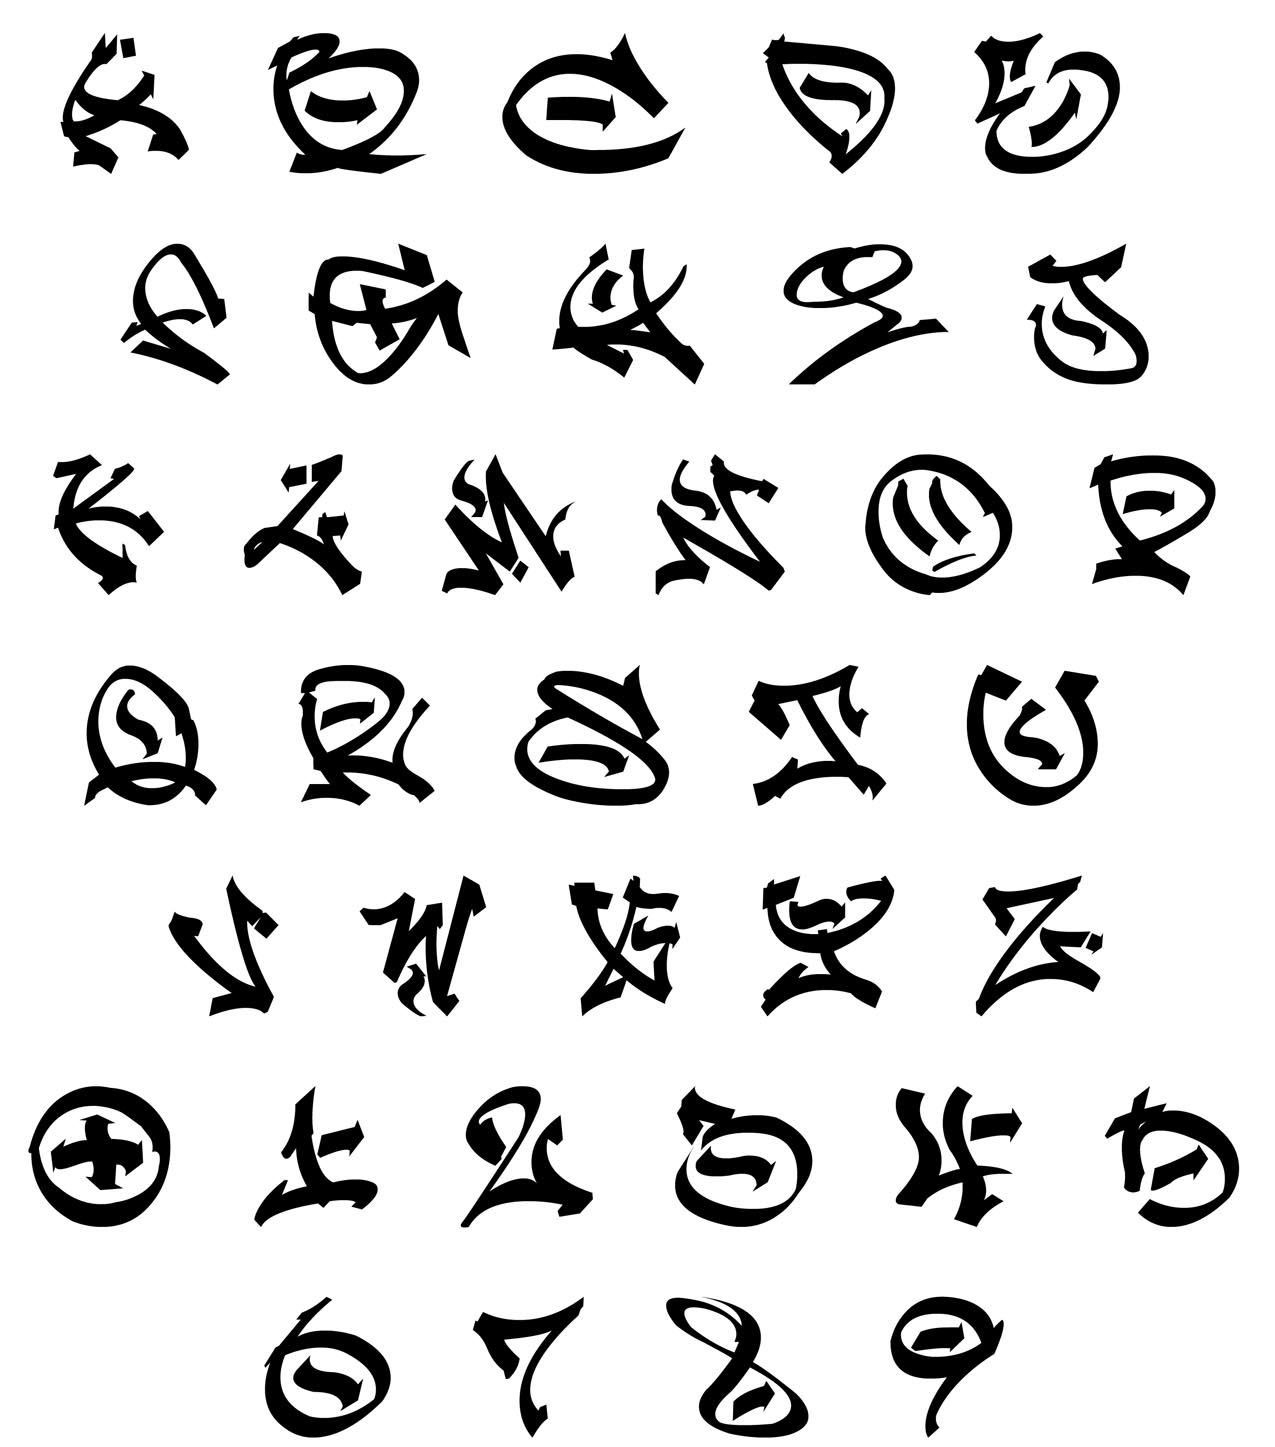 символы и шрифты для ников пабг фото 6